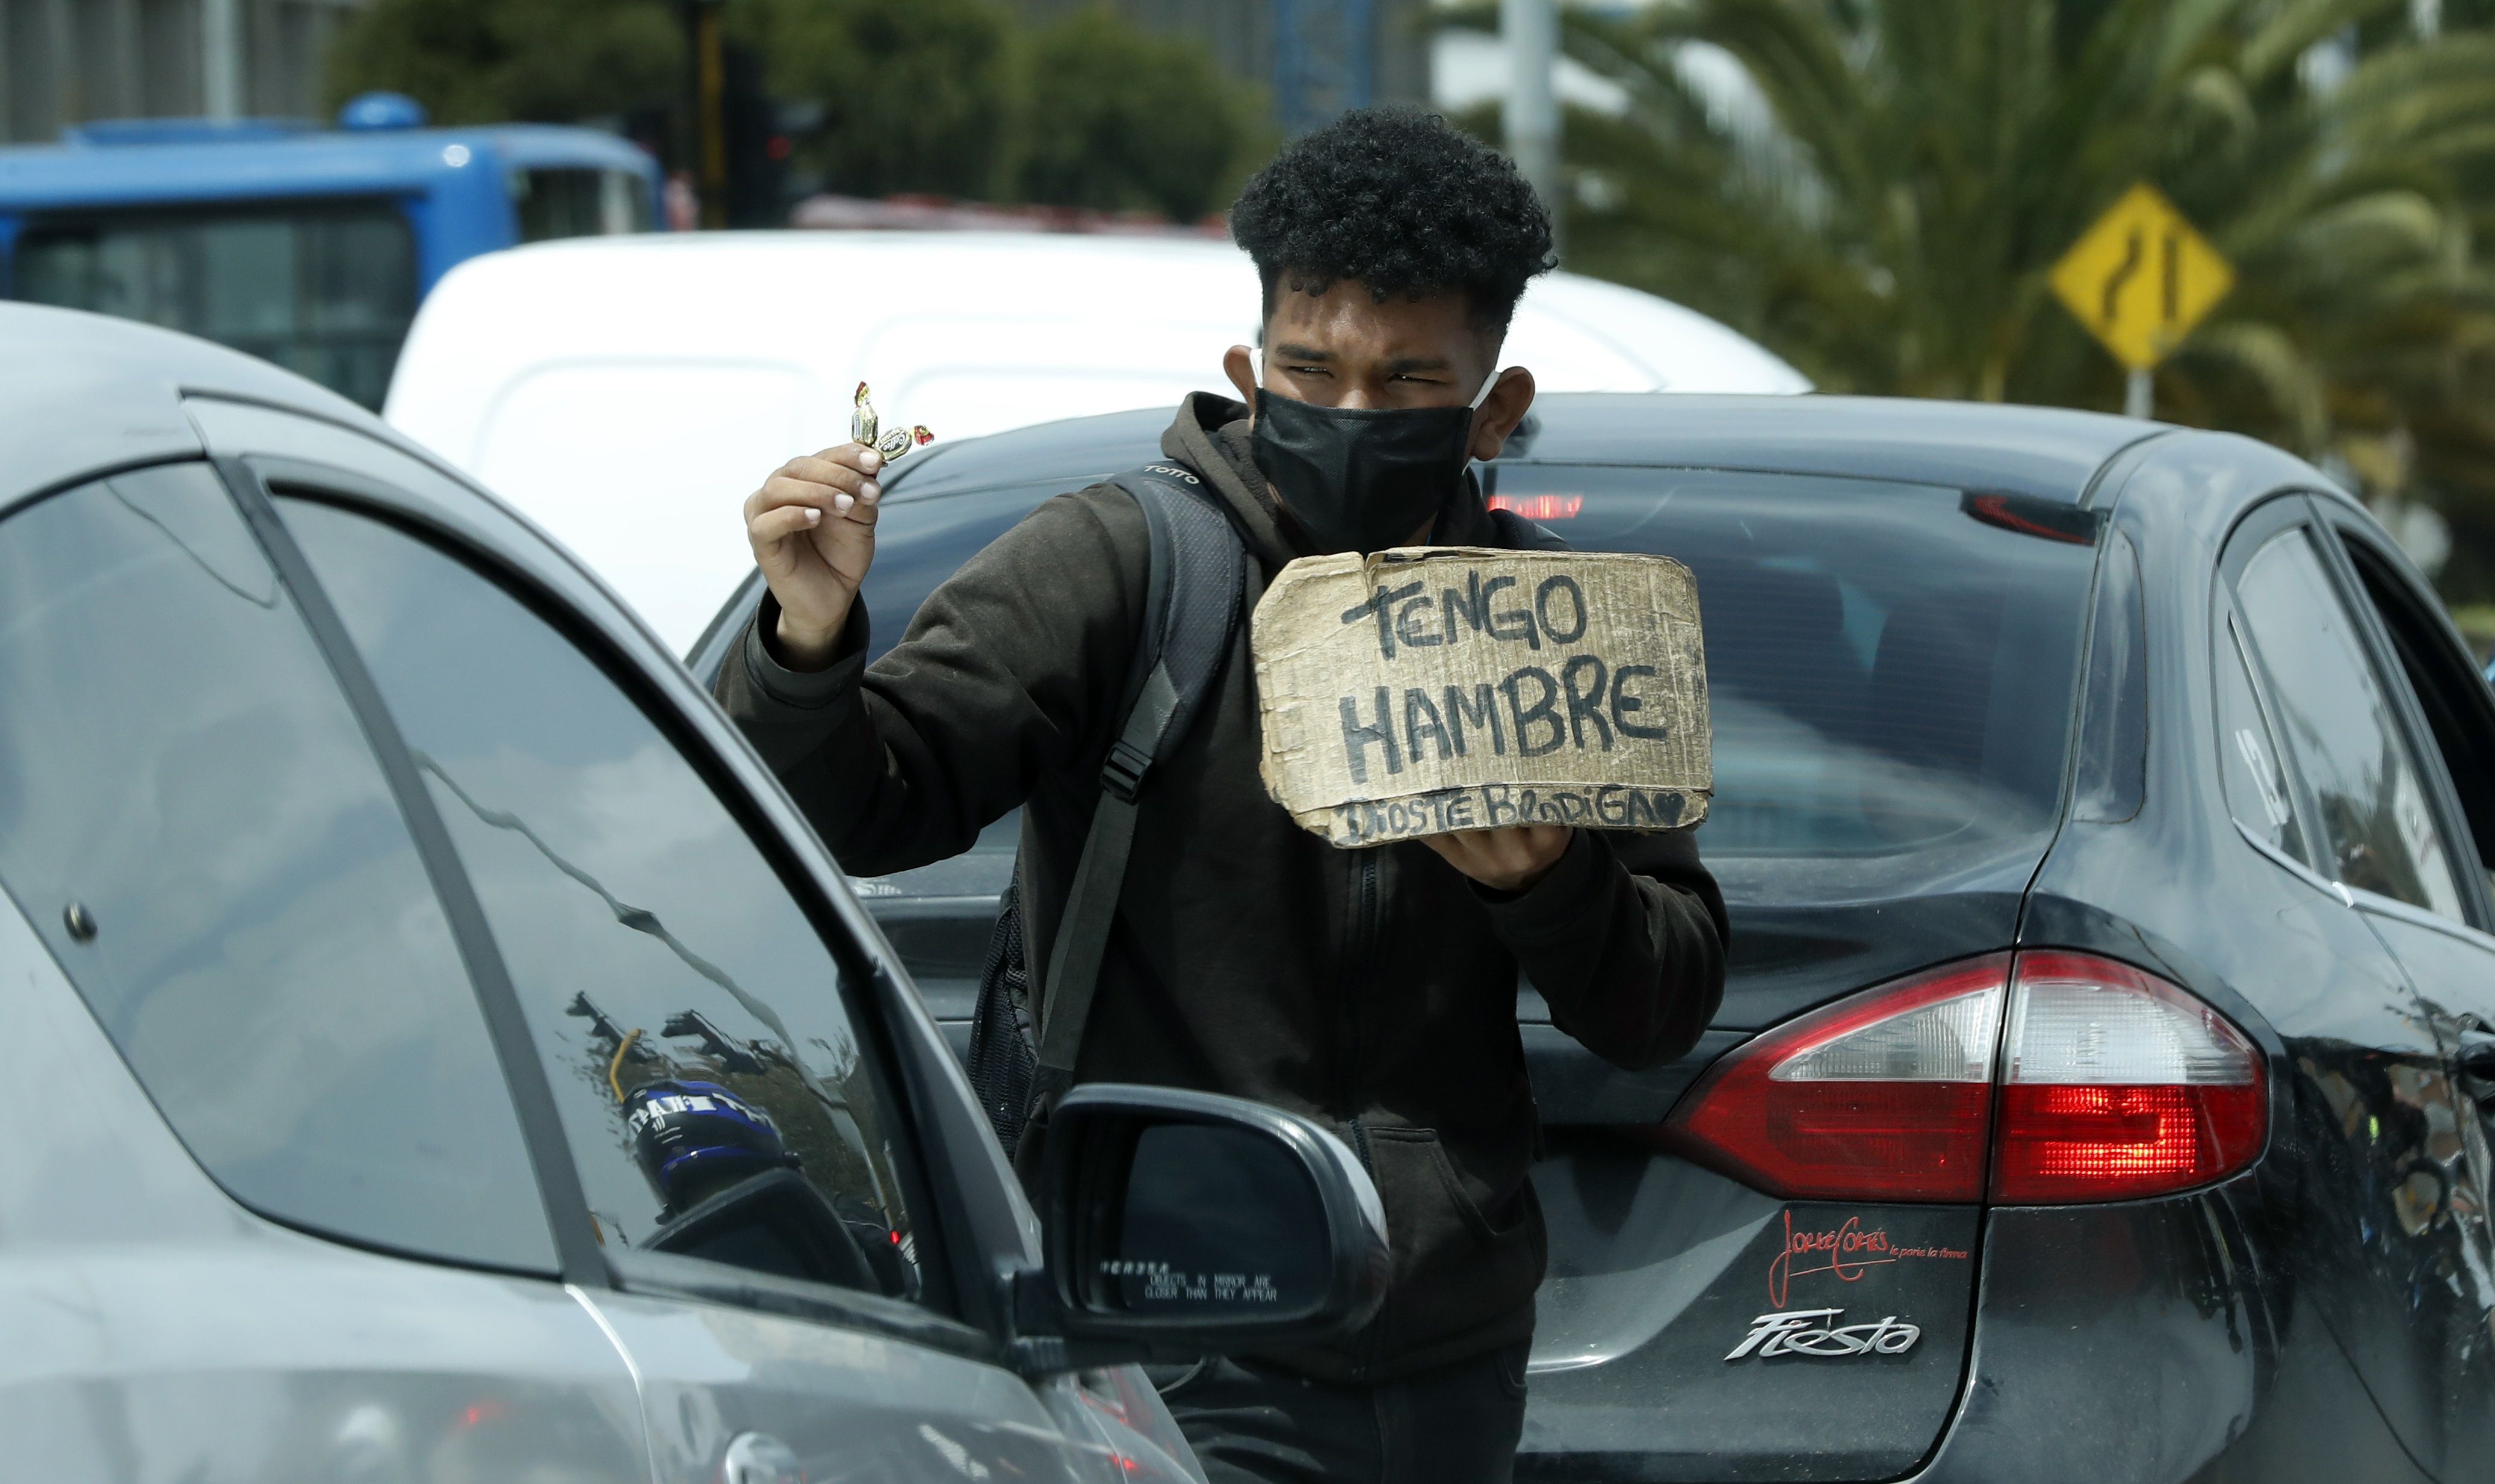 Un hombre vende dulces y pide ayuda en un semáforo, en Bogotá (Colombia). EFE/ Mauricio Duenas Castañeda/Archivo 